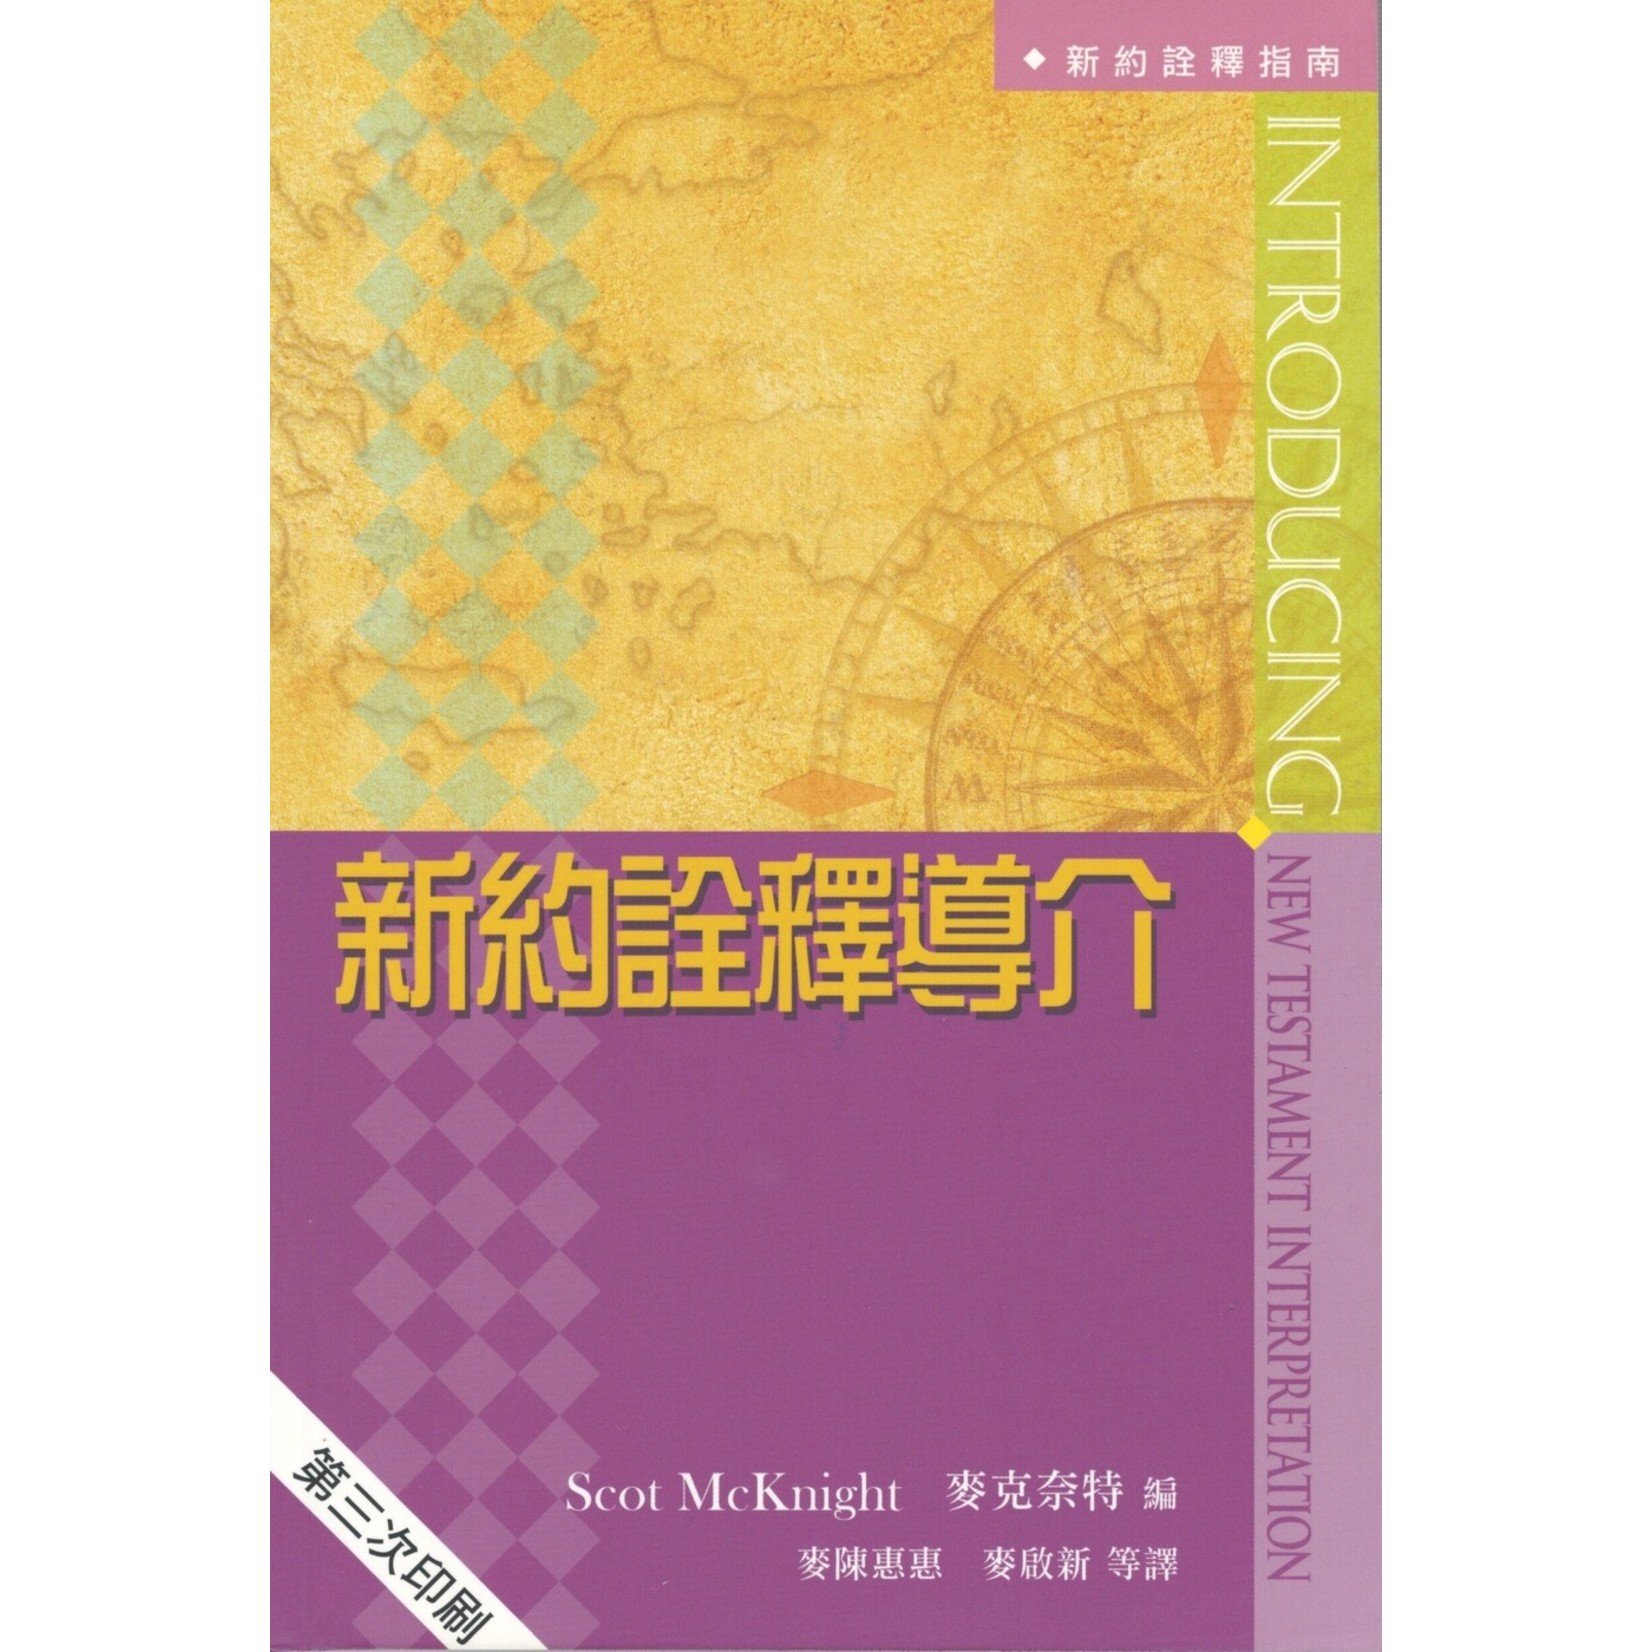 天道書樓 Tien Dao Publishing House 新約詮釋導介 Introducing New Testament Interpretation